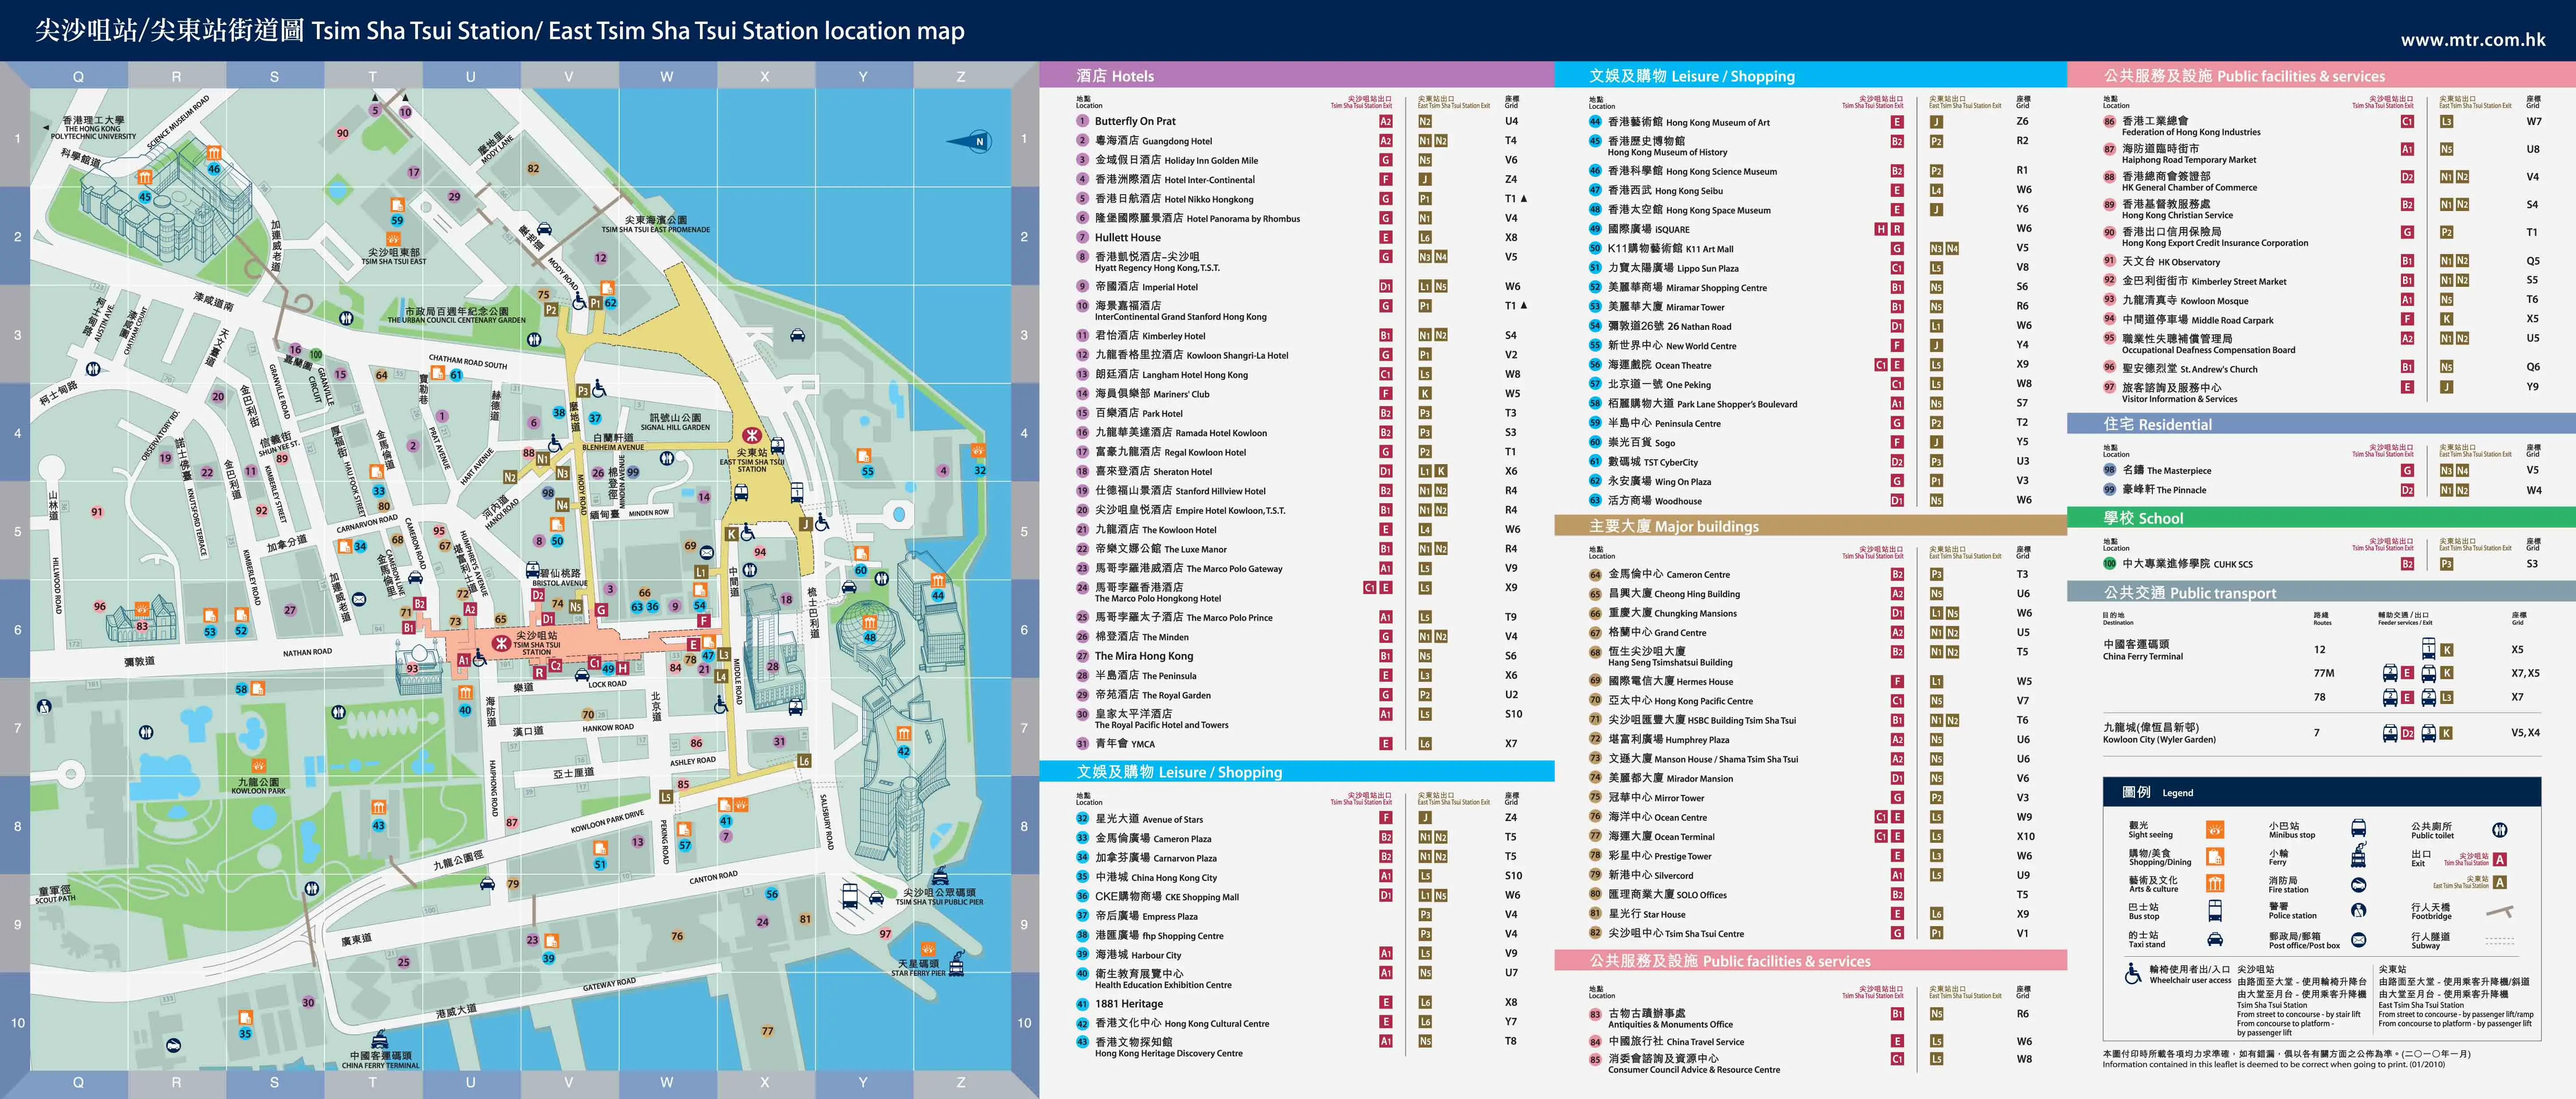 Kowloon: Tsim Sha Tsui MTR station area map 2012-2013